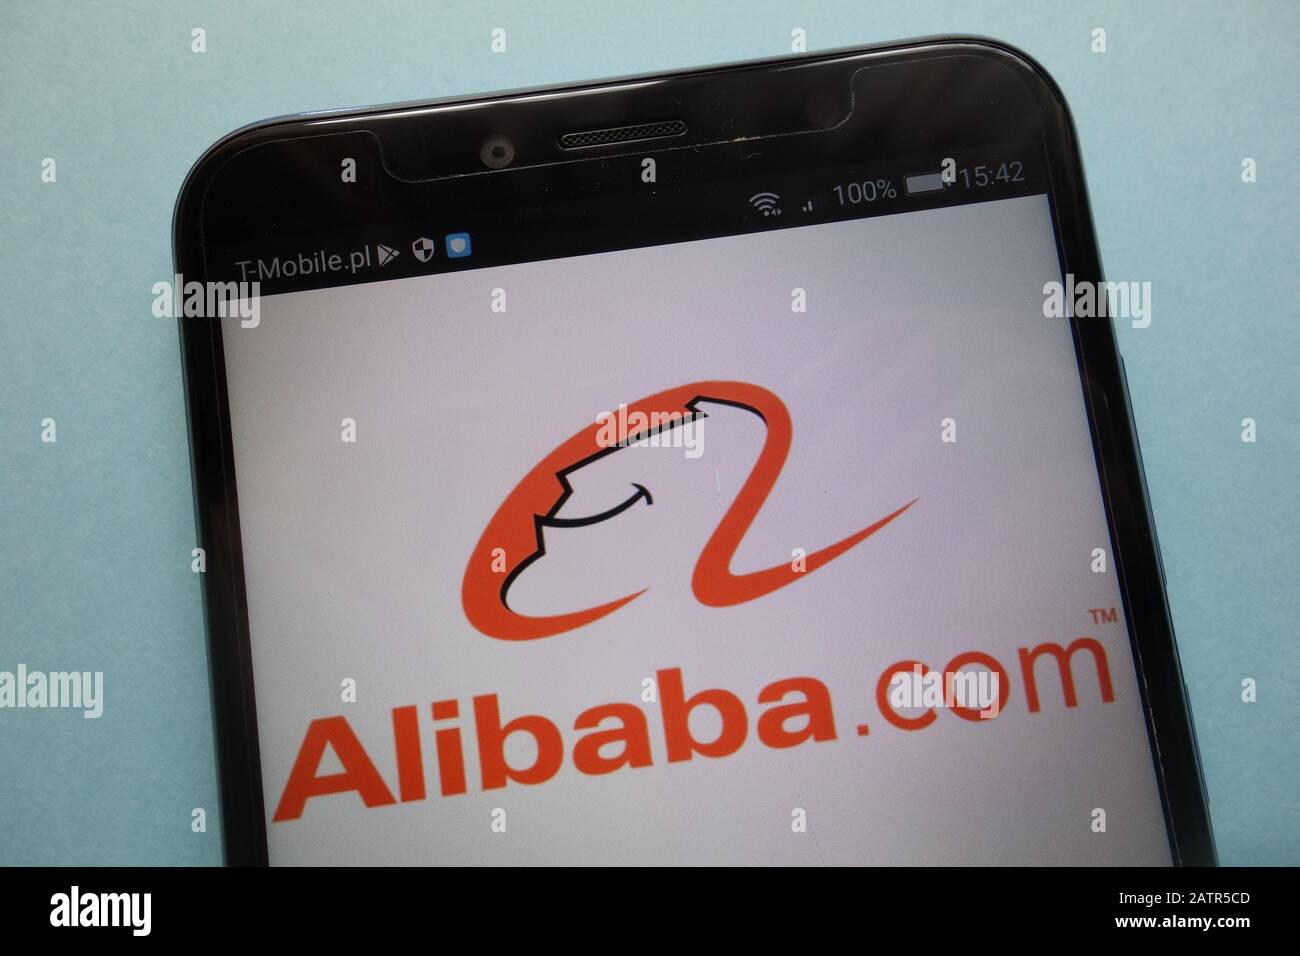 Alibaba logo on smartphone Stock Photo